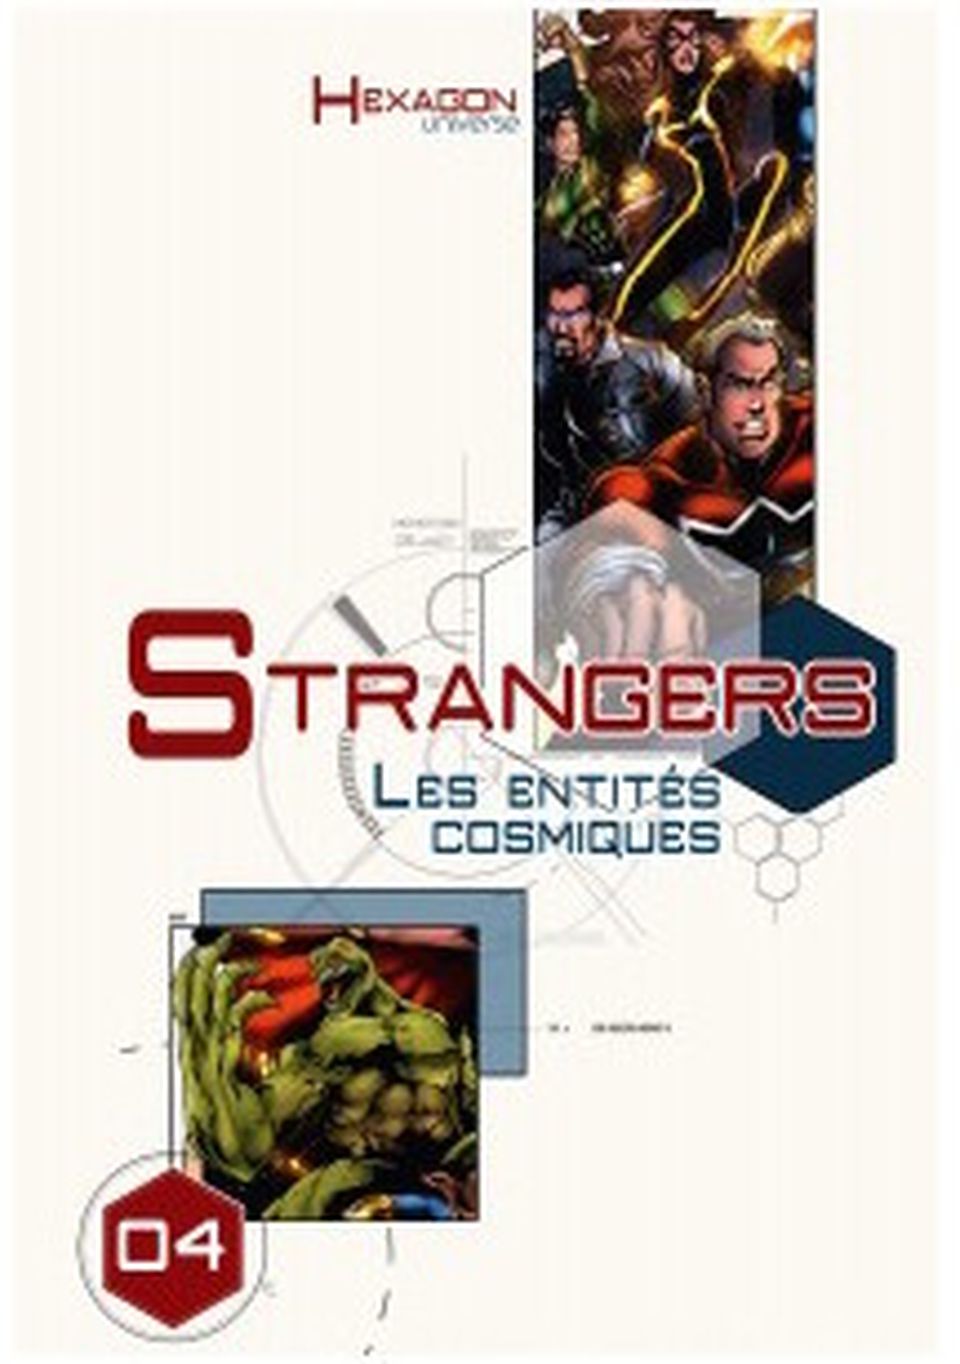 Hexagon Universe 04 : Strangers I Les Entités Cosmiques image